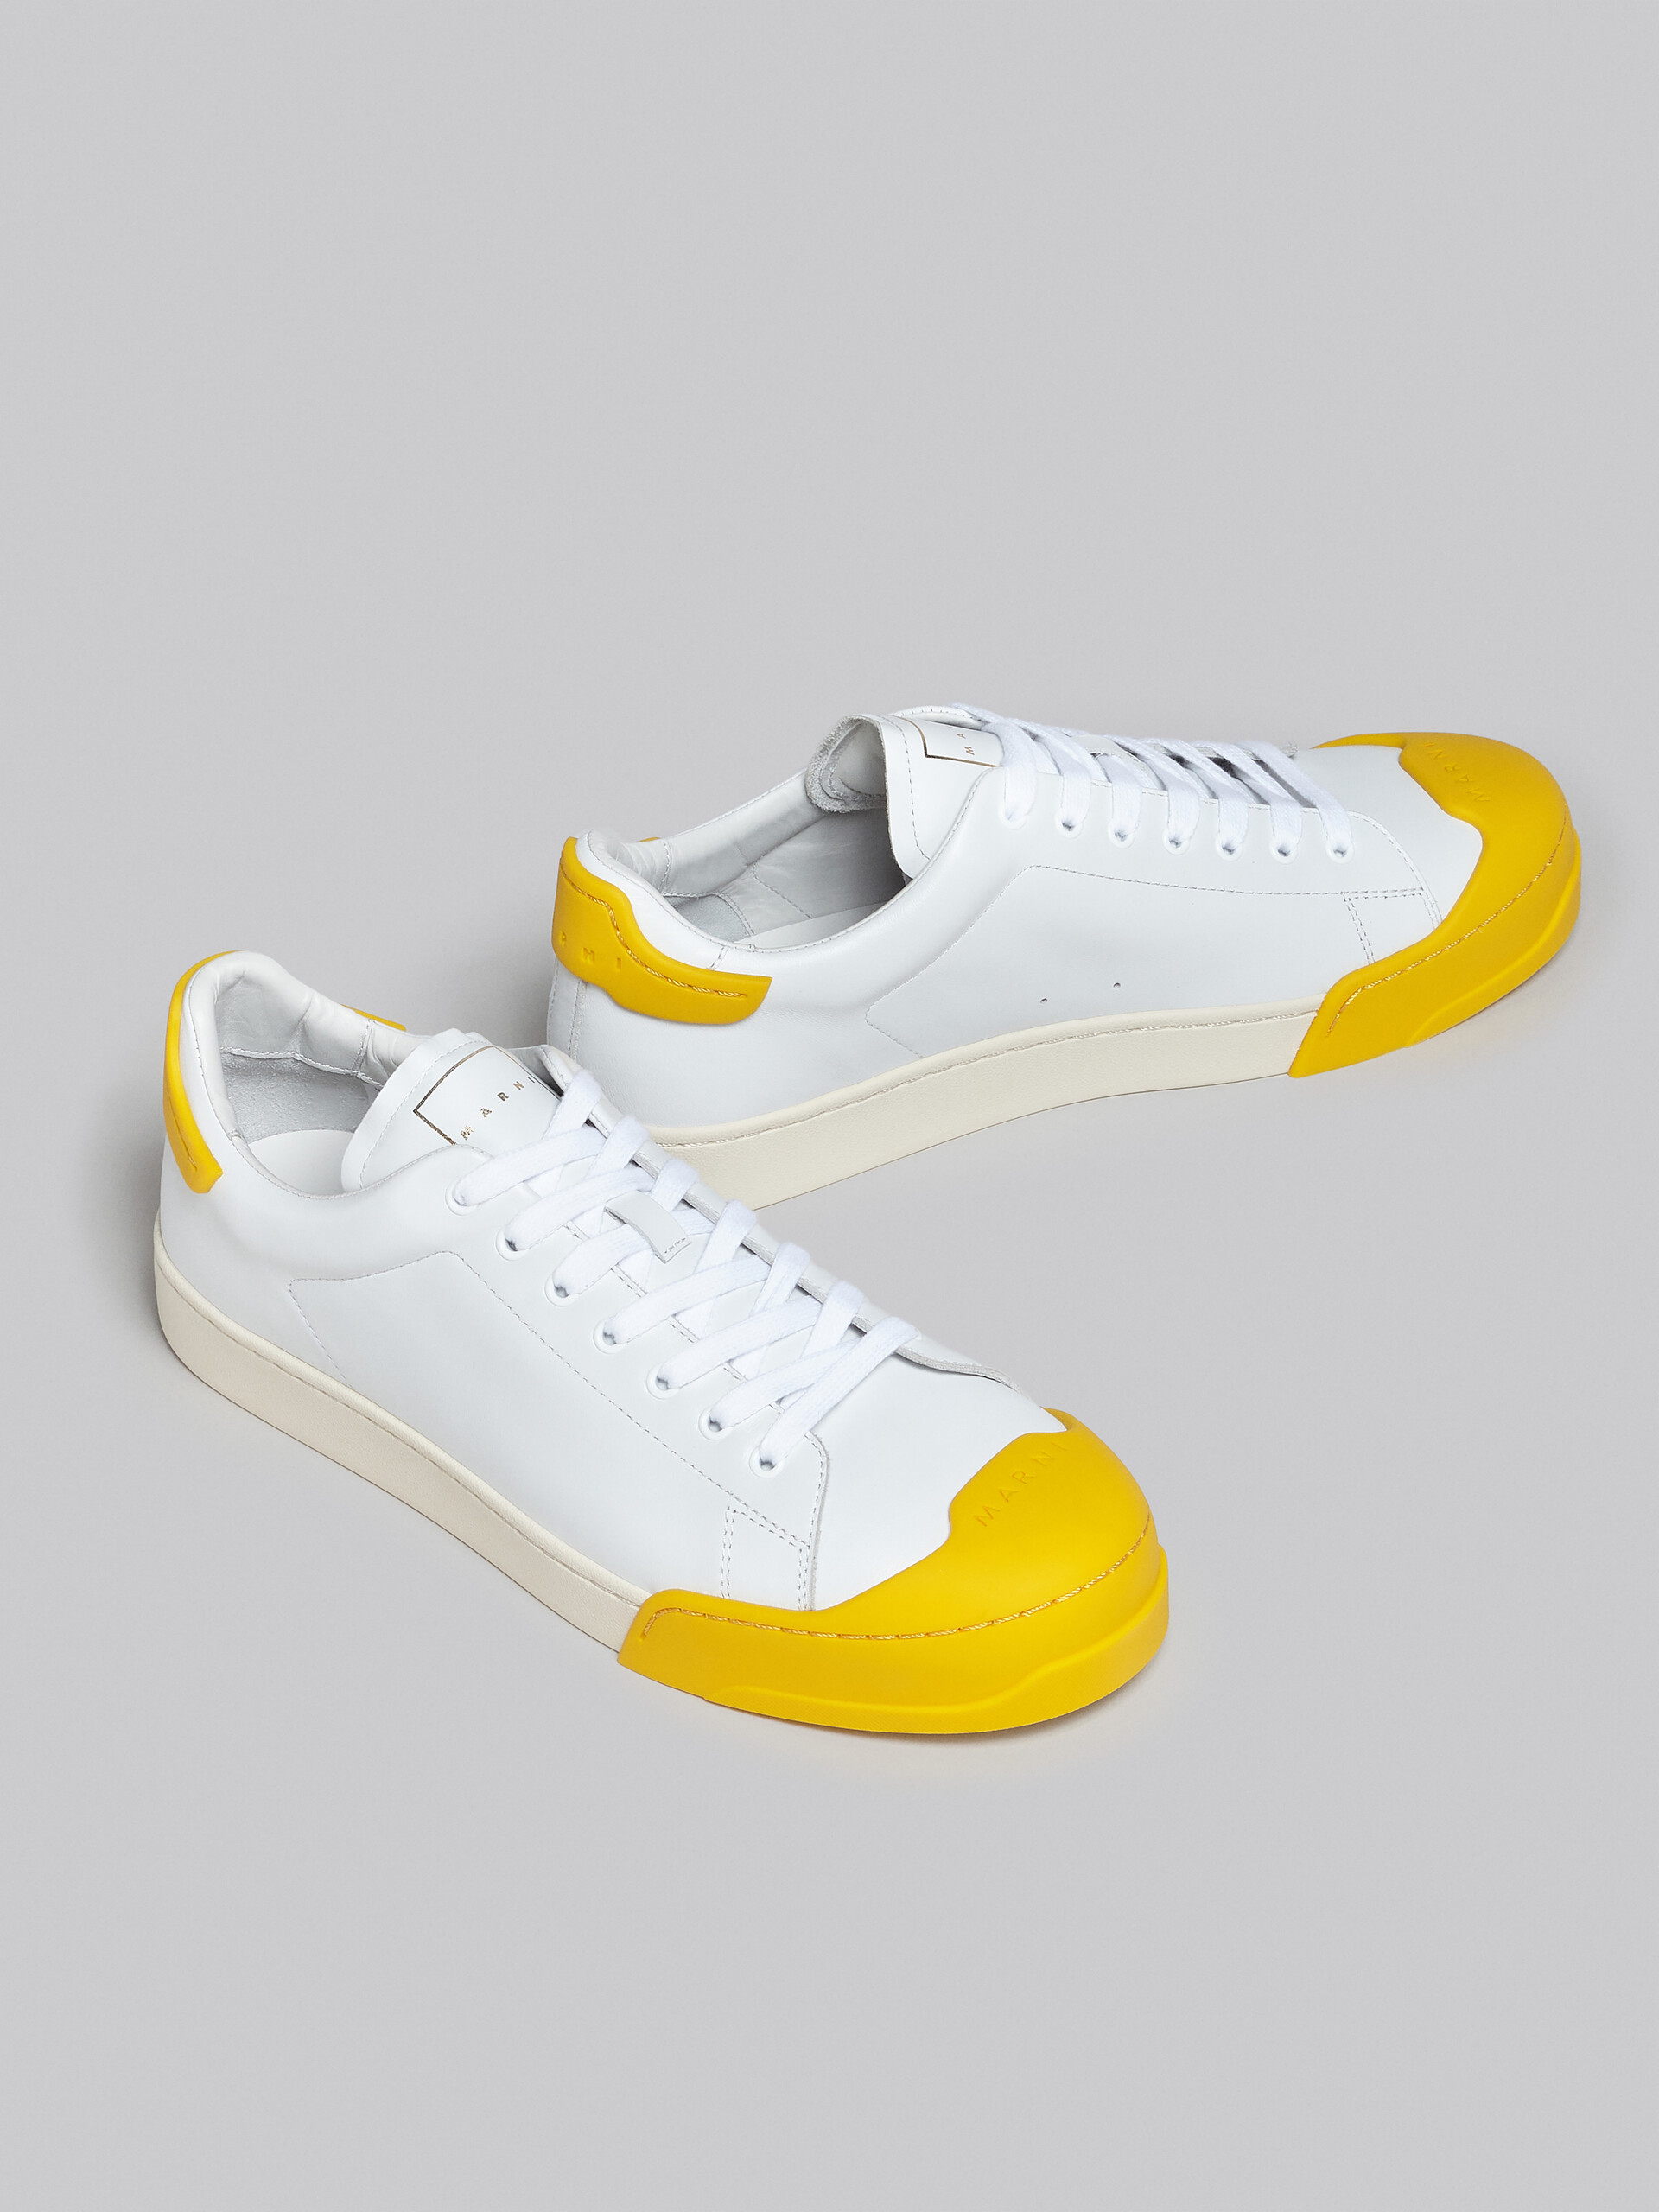 Sneaker Dada Bumper in pelle bianca e gialla - Sneakers - Image 5